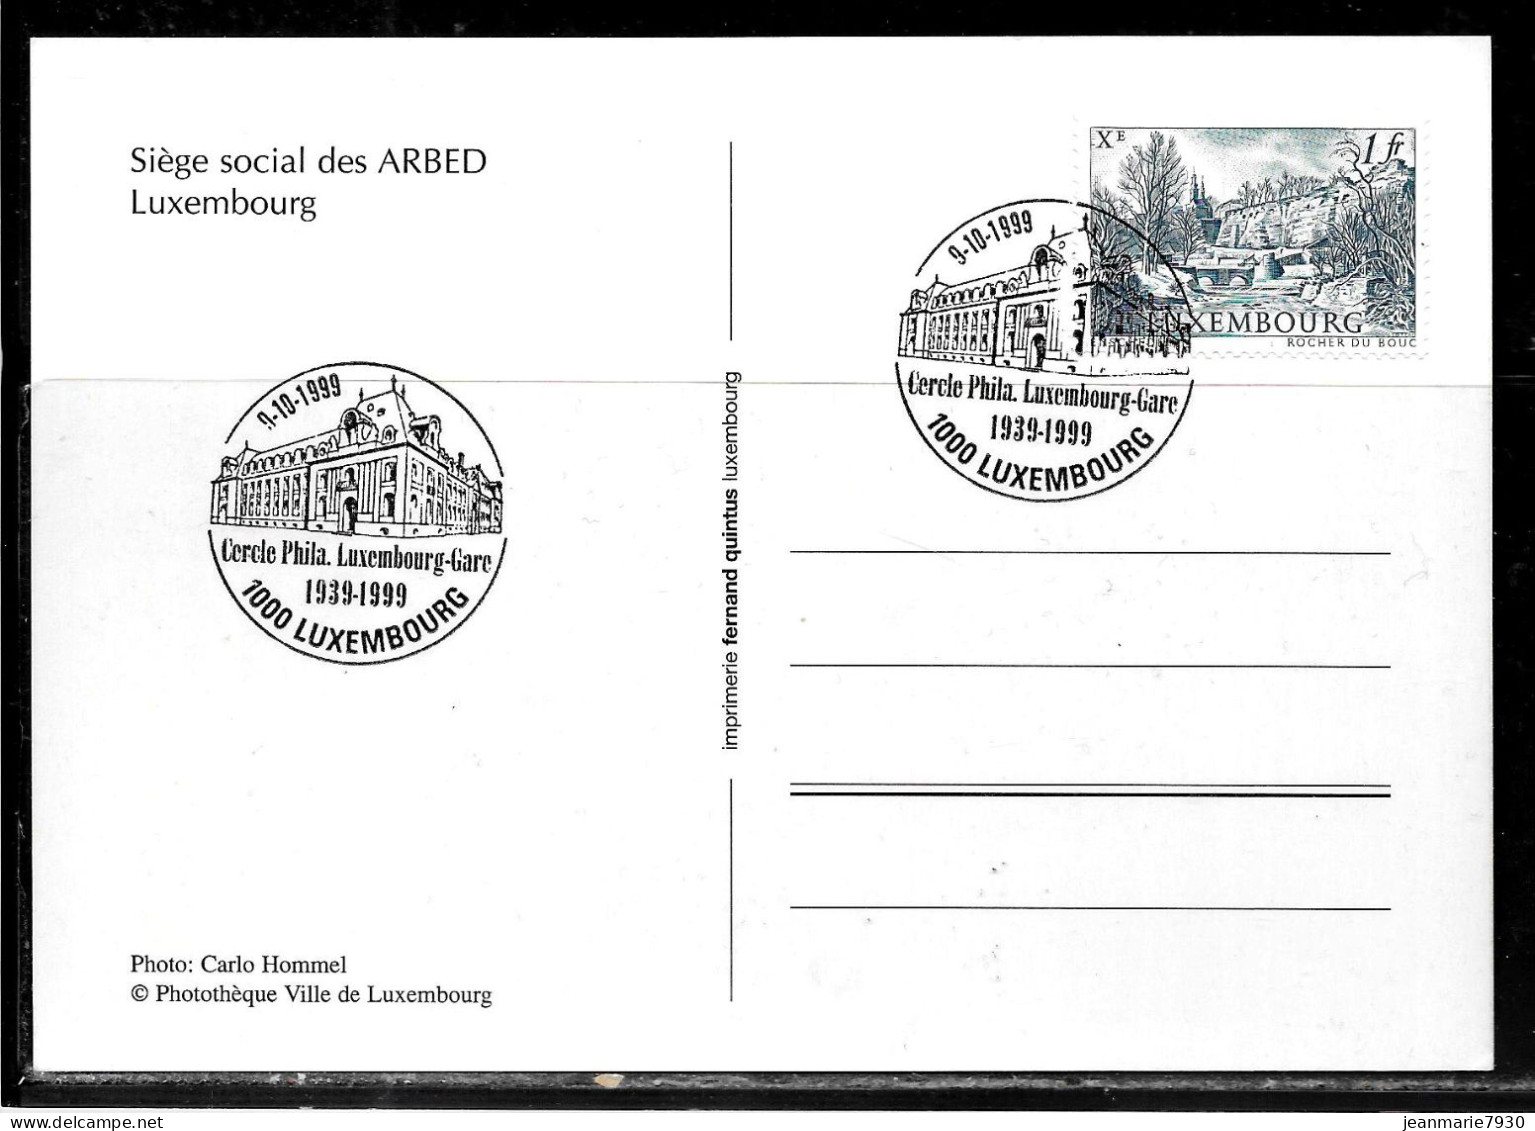 H366 - CARTE POSTALE DE LUXEMBOURG DU 09/10/99 - SIEGE DE L'ARBED - Lettres & Documents